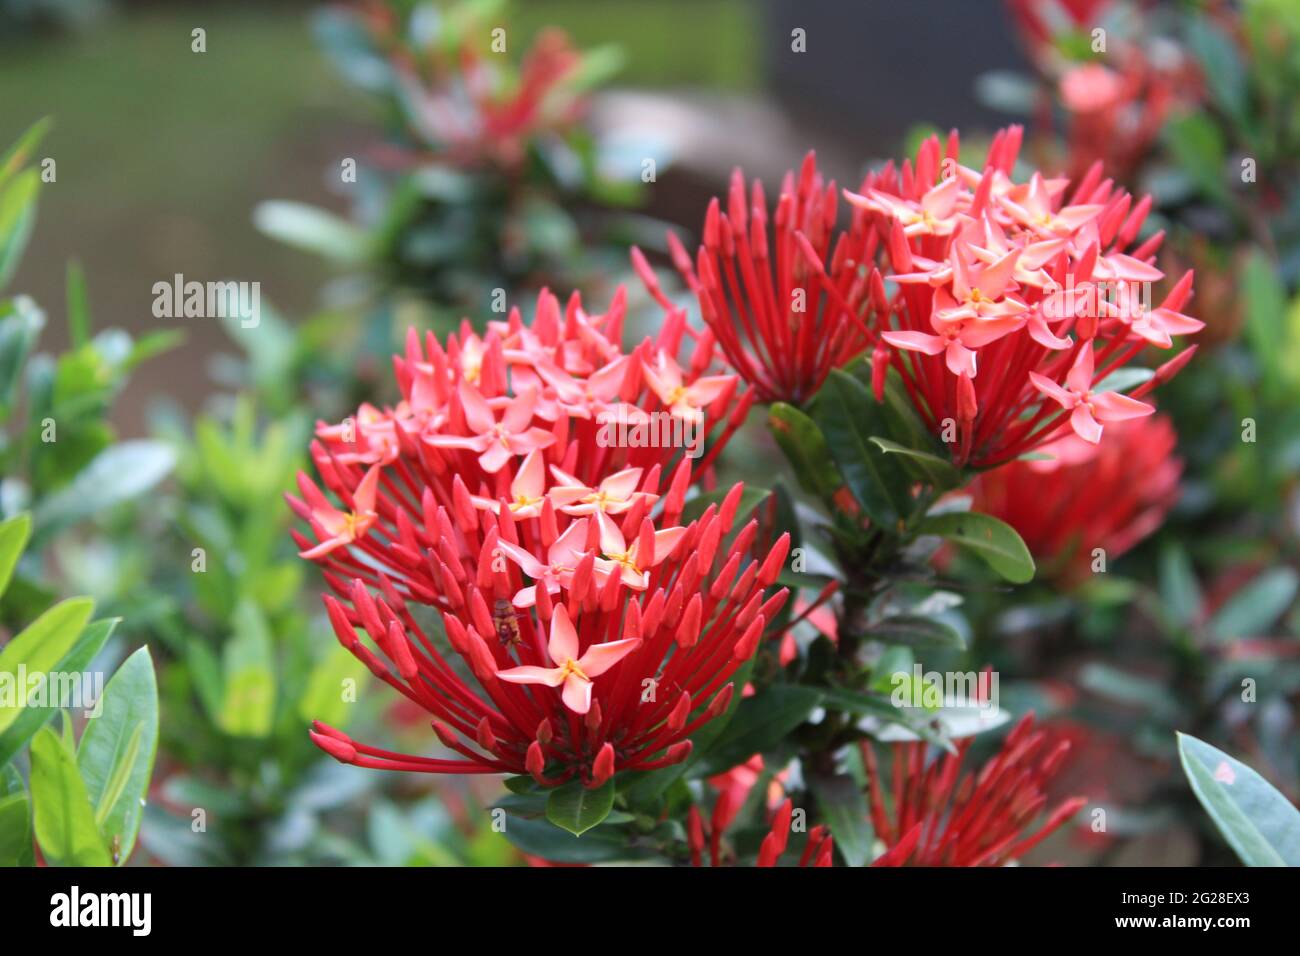 Leuchtendes Rot kleiner Blumenstrauß: Waldflamme (Rubiaceae) Ixora coccinea L. -- Dschungelgeranie, Nadelblume, Dschungelgeranie Stockfoto